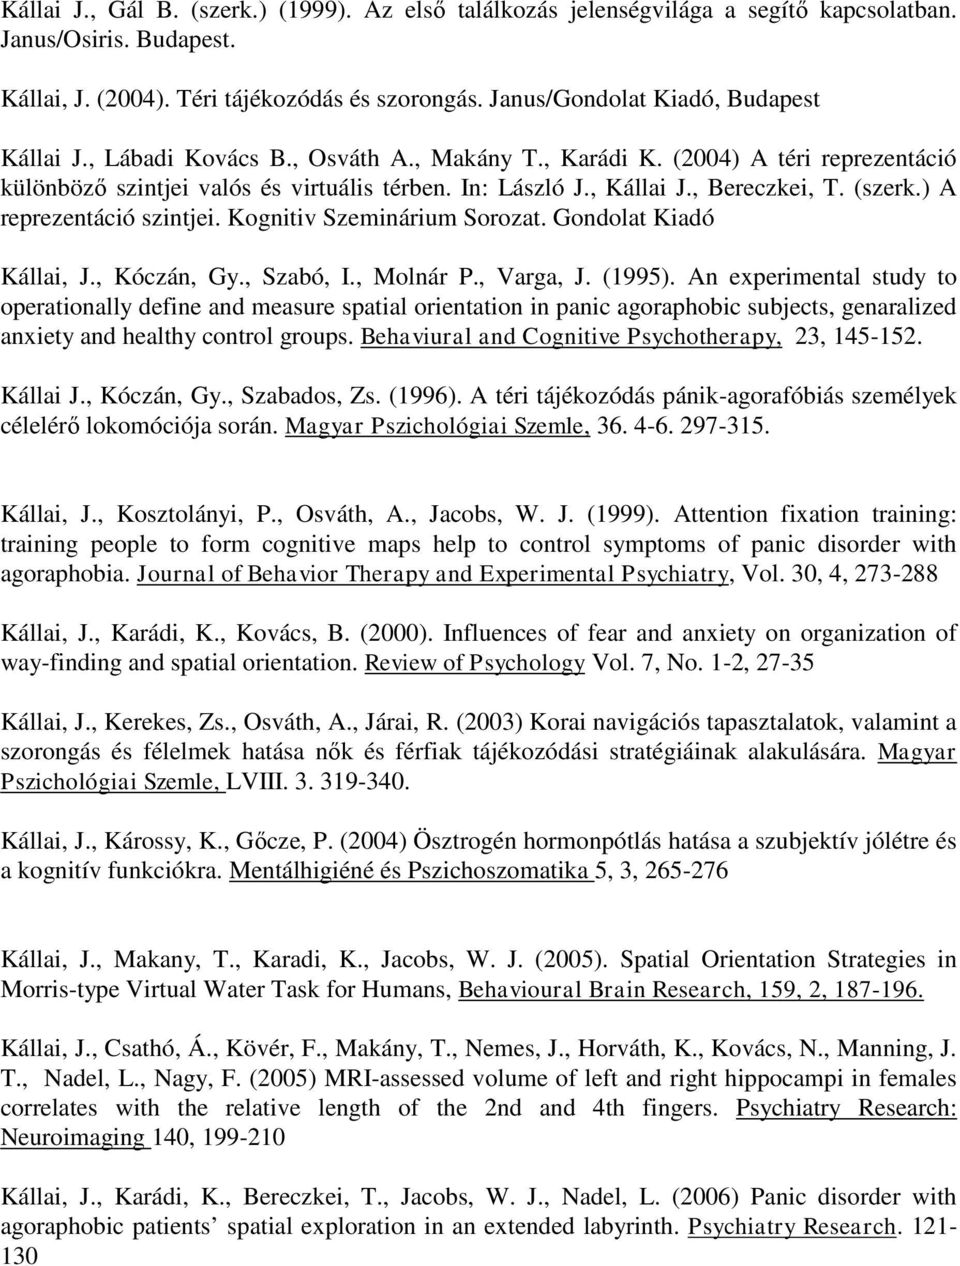 , Bereczkei, T. (szerk.) A reprezentáció szintjei. Kognitiv Szeminárium Sorozat. Gondolat Kiadó Kállai, J., Kóczán, Gy., Szabó, I., Molnár P., Varga, J. (1995).